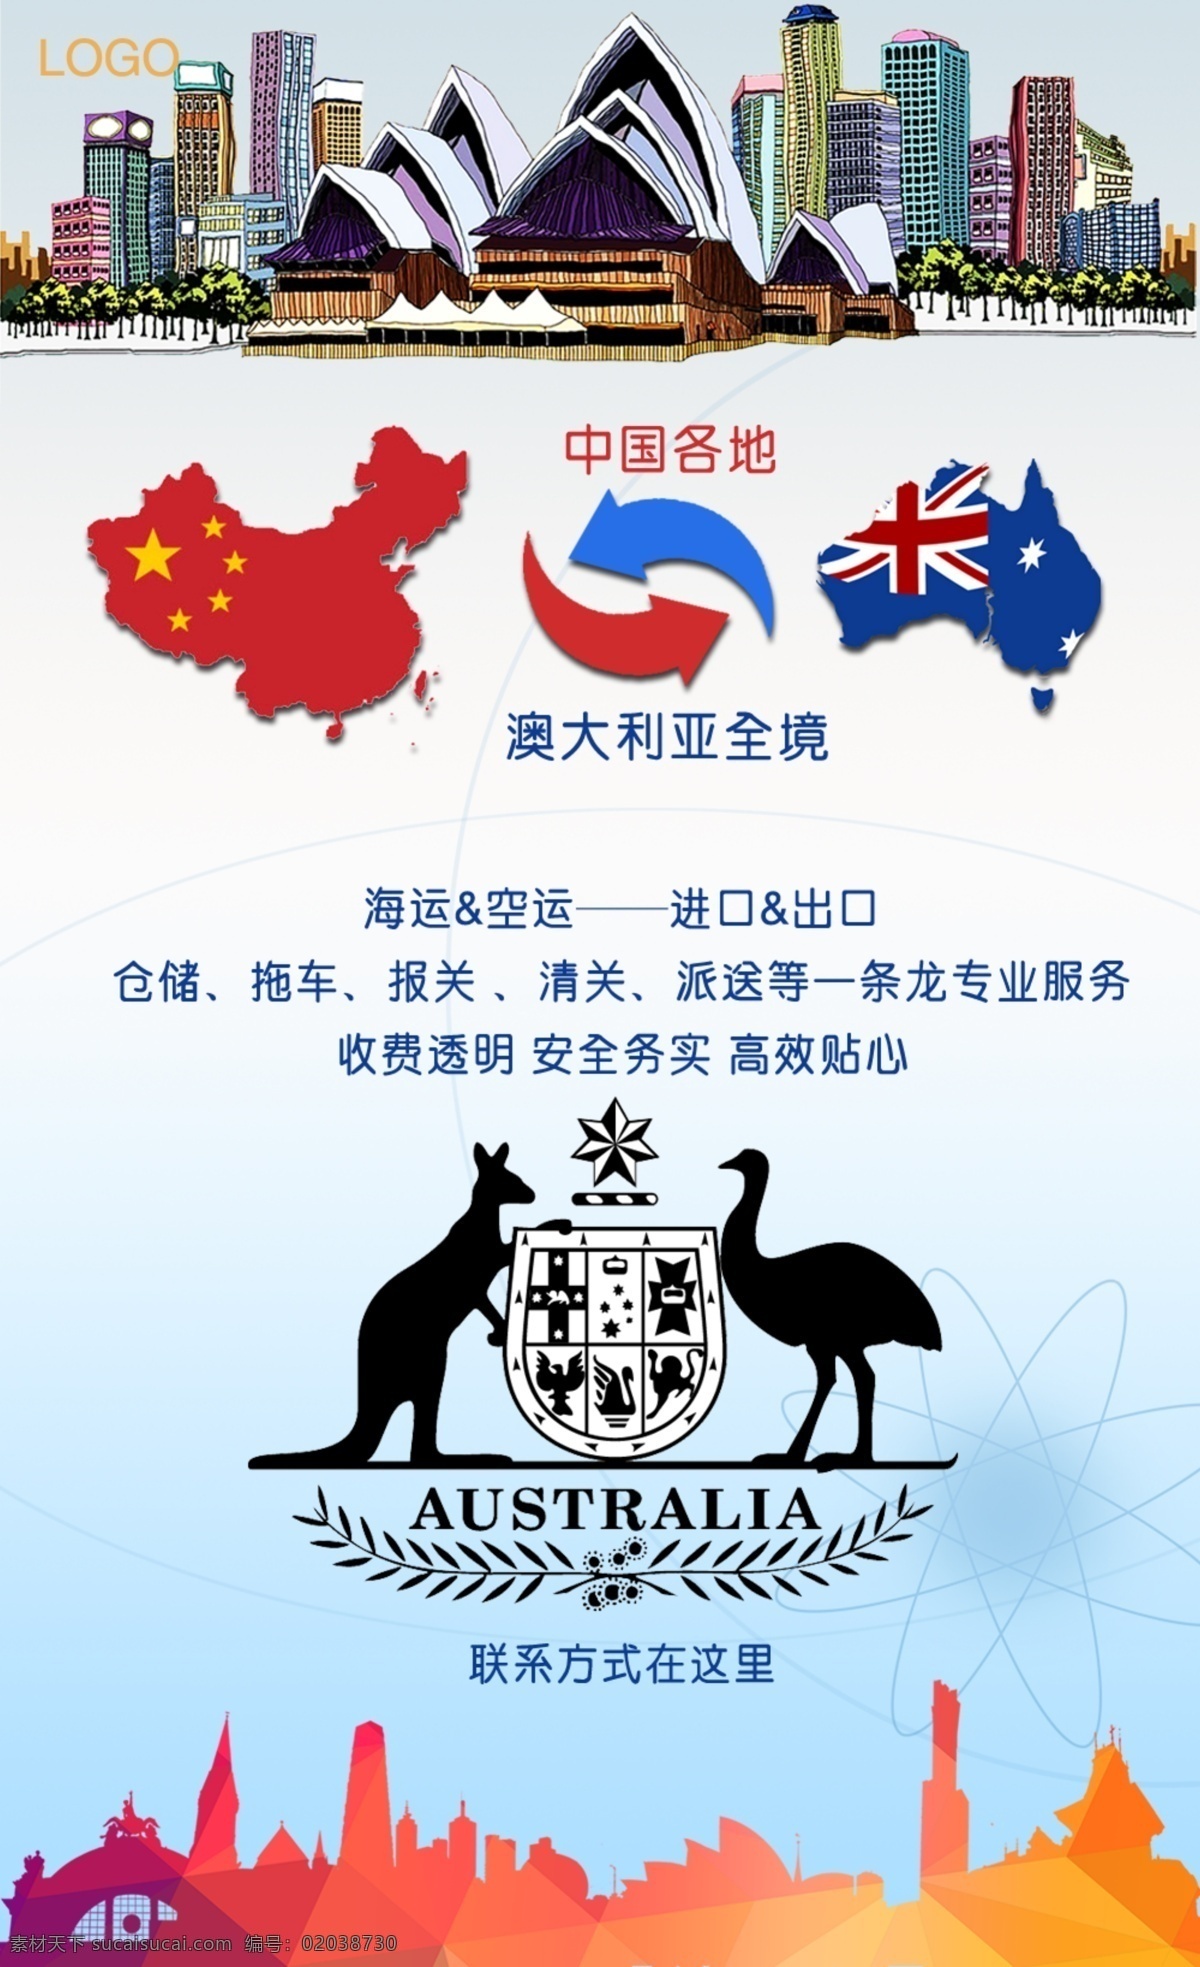 澳洲 进出口 宣传海报 袋鼠 澳洲往来 进口 出口 海运 空运